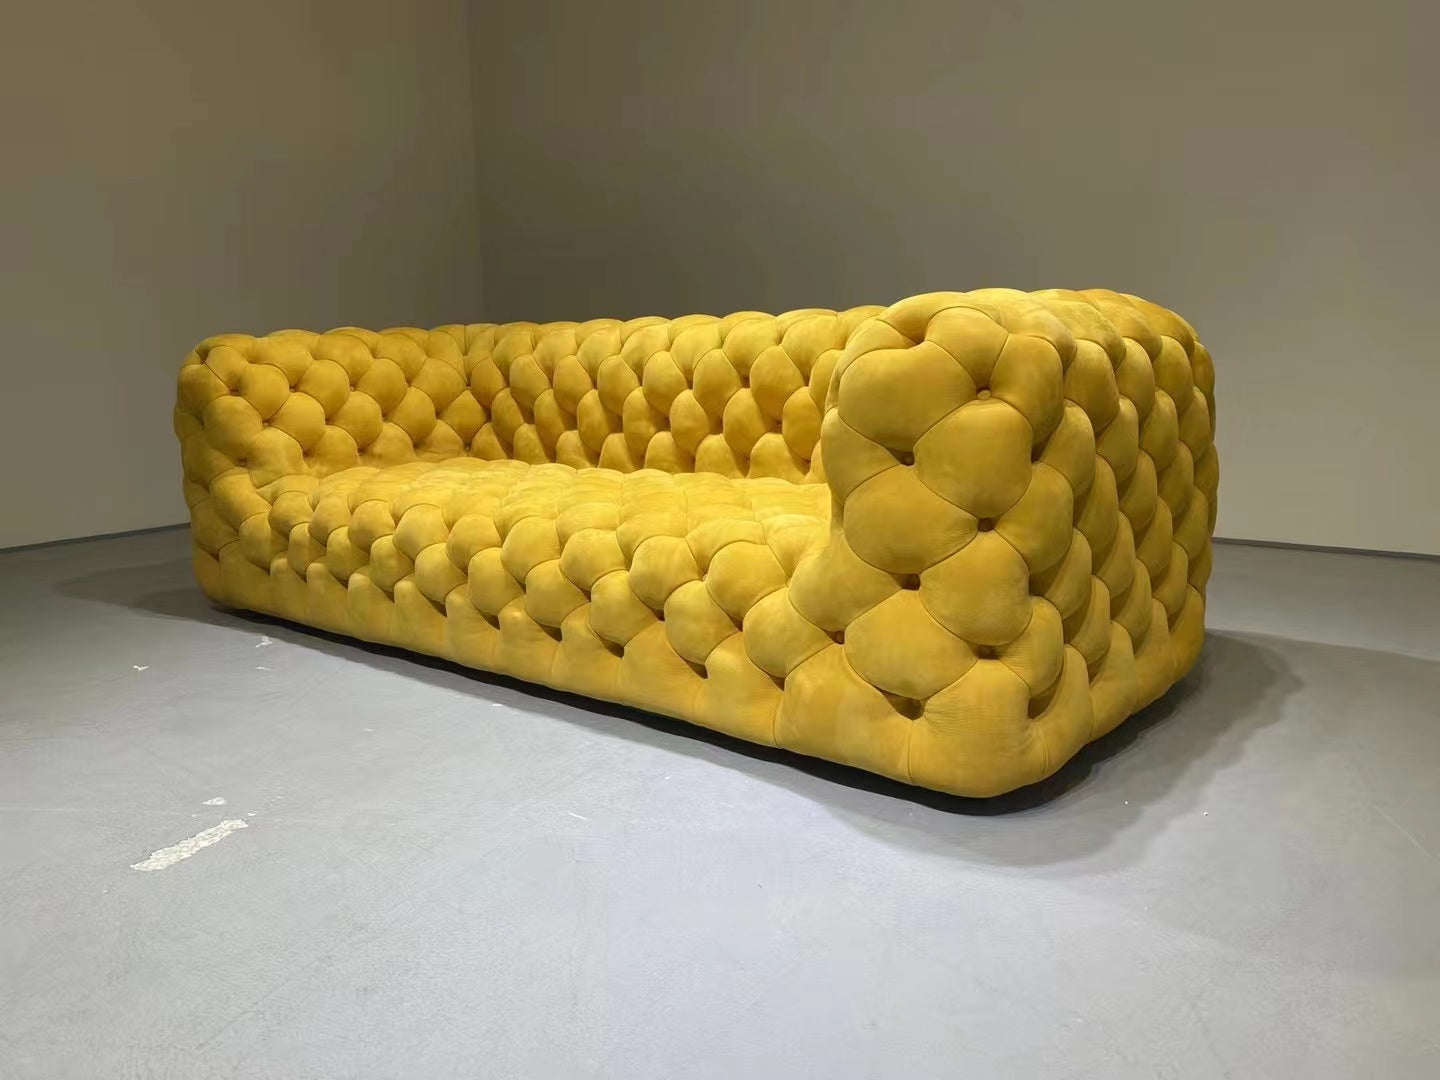 The Amalfi Sofa